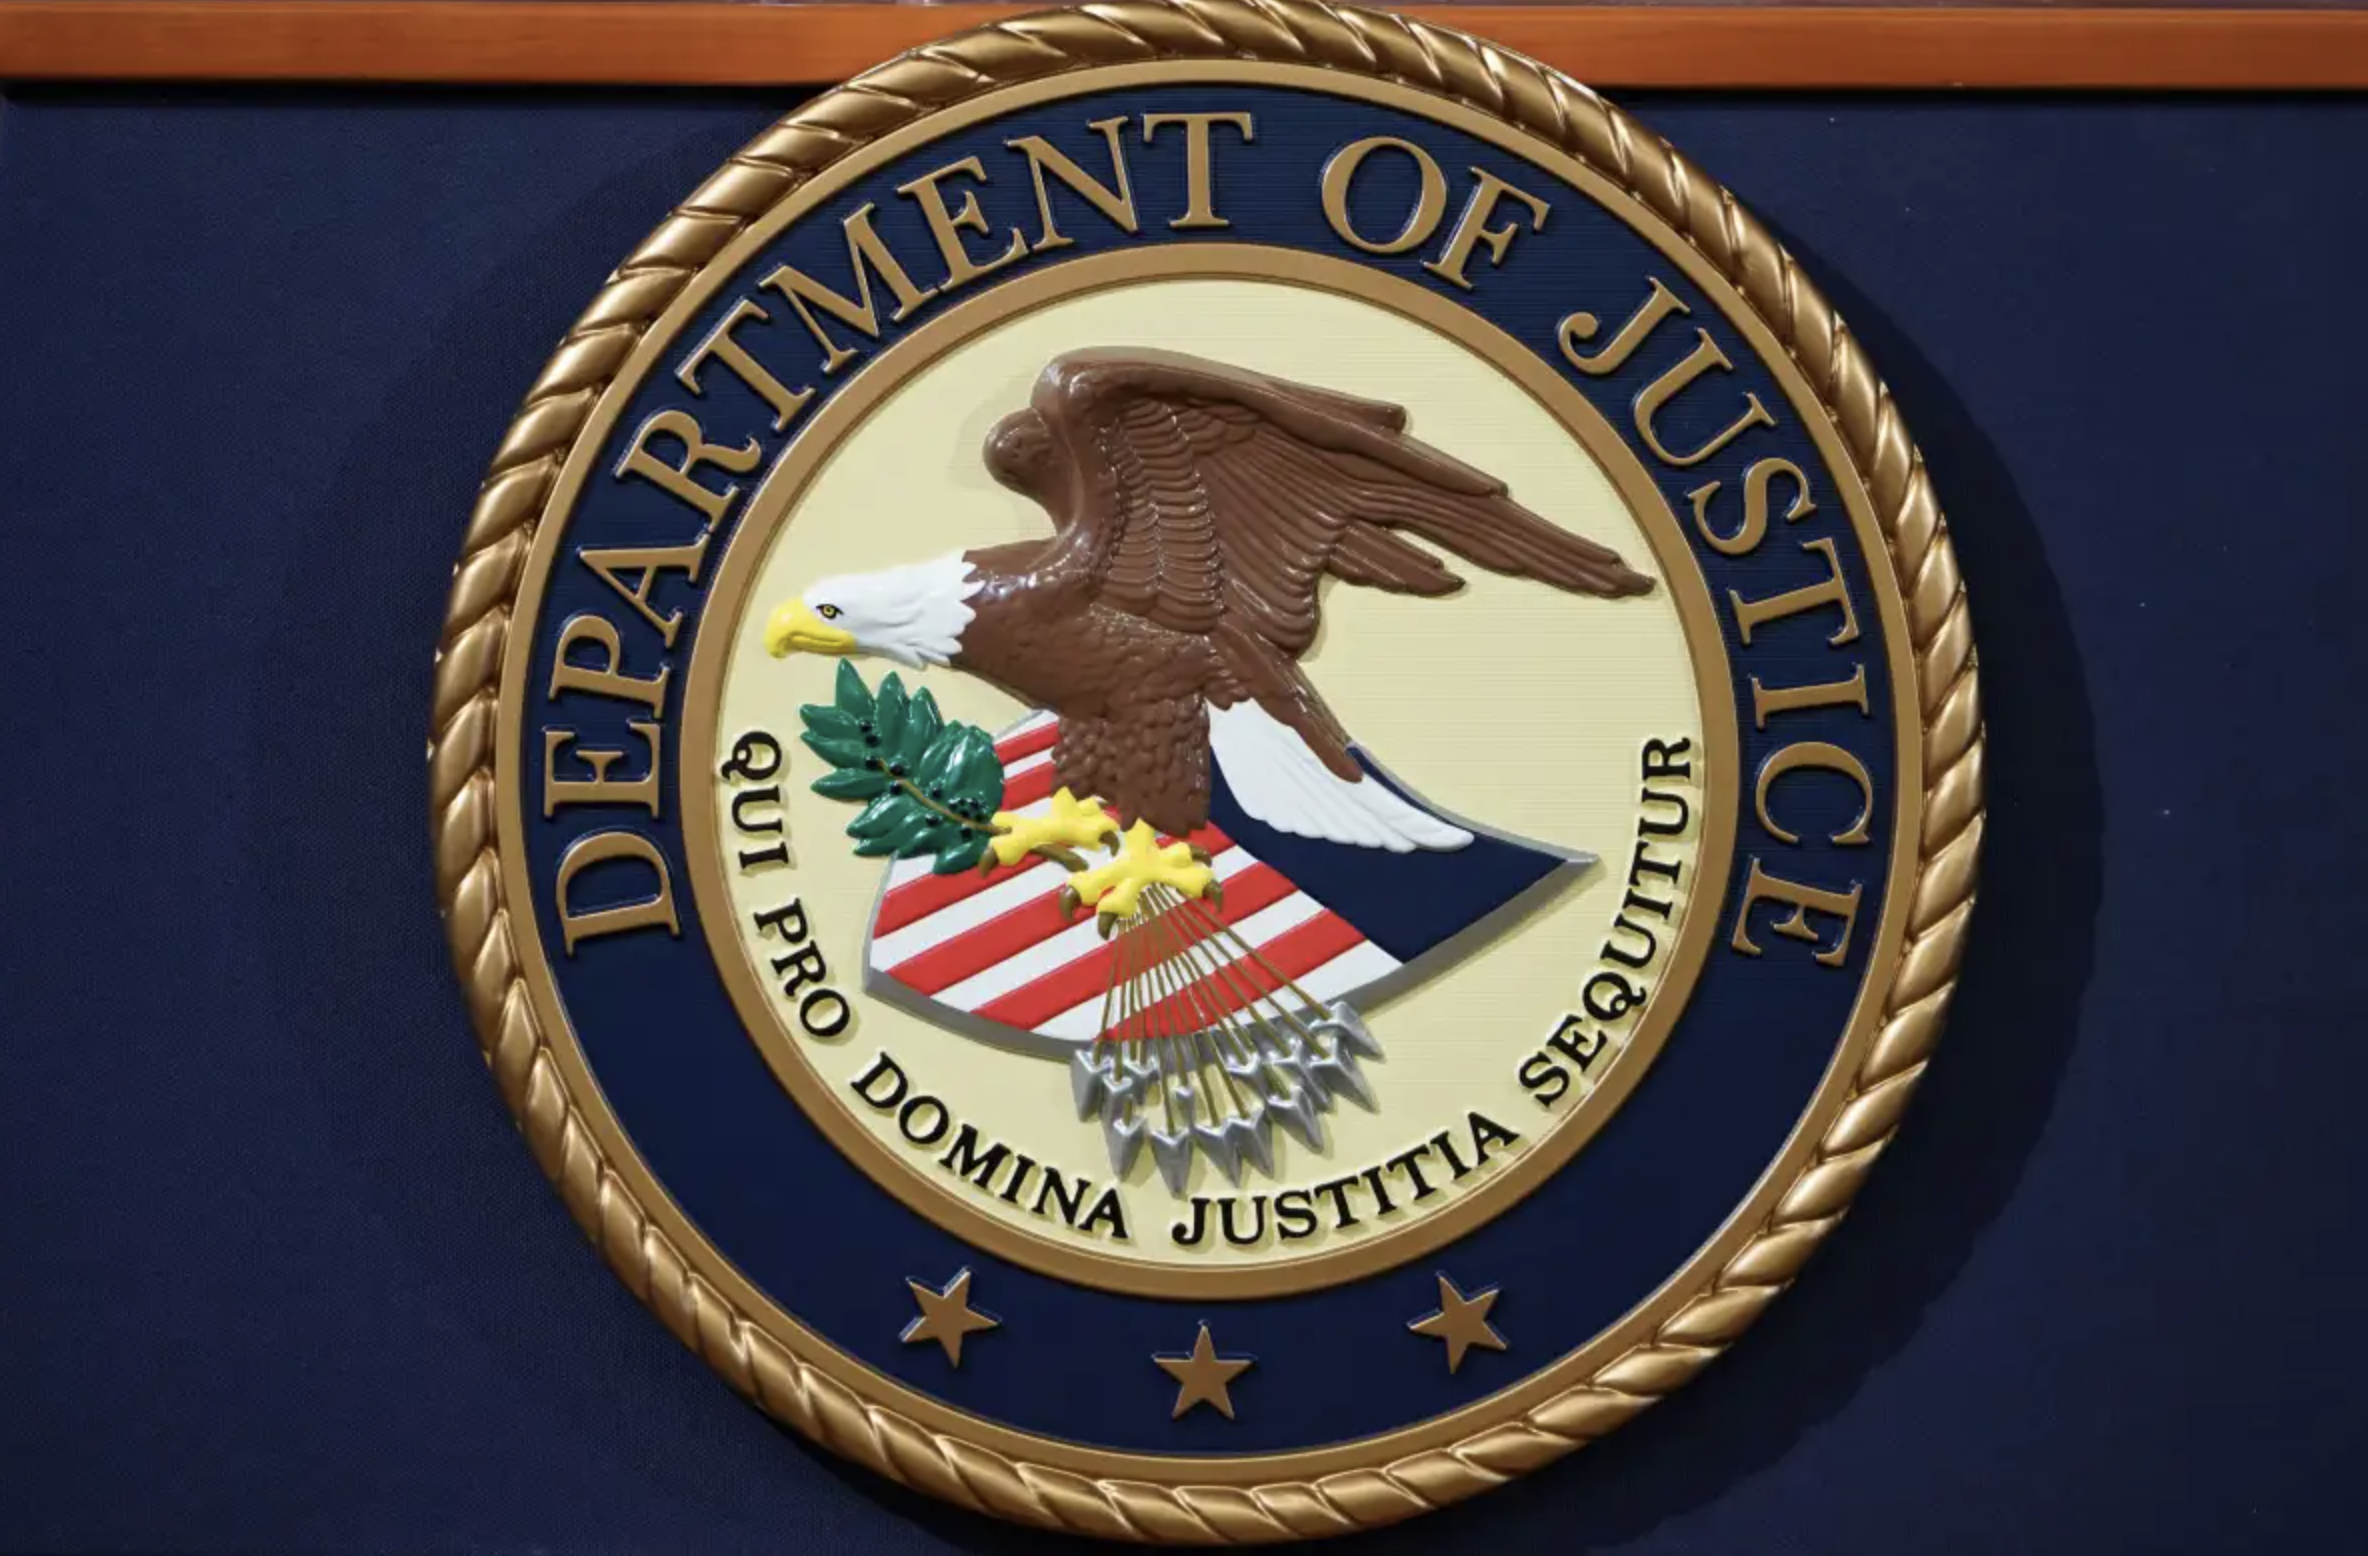 Department of Justice insignia